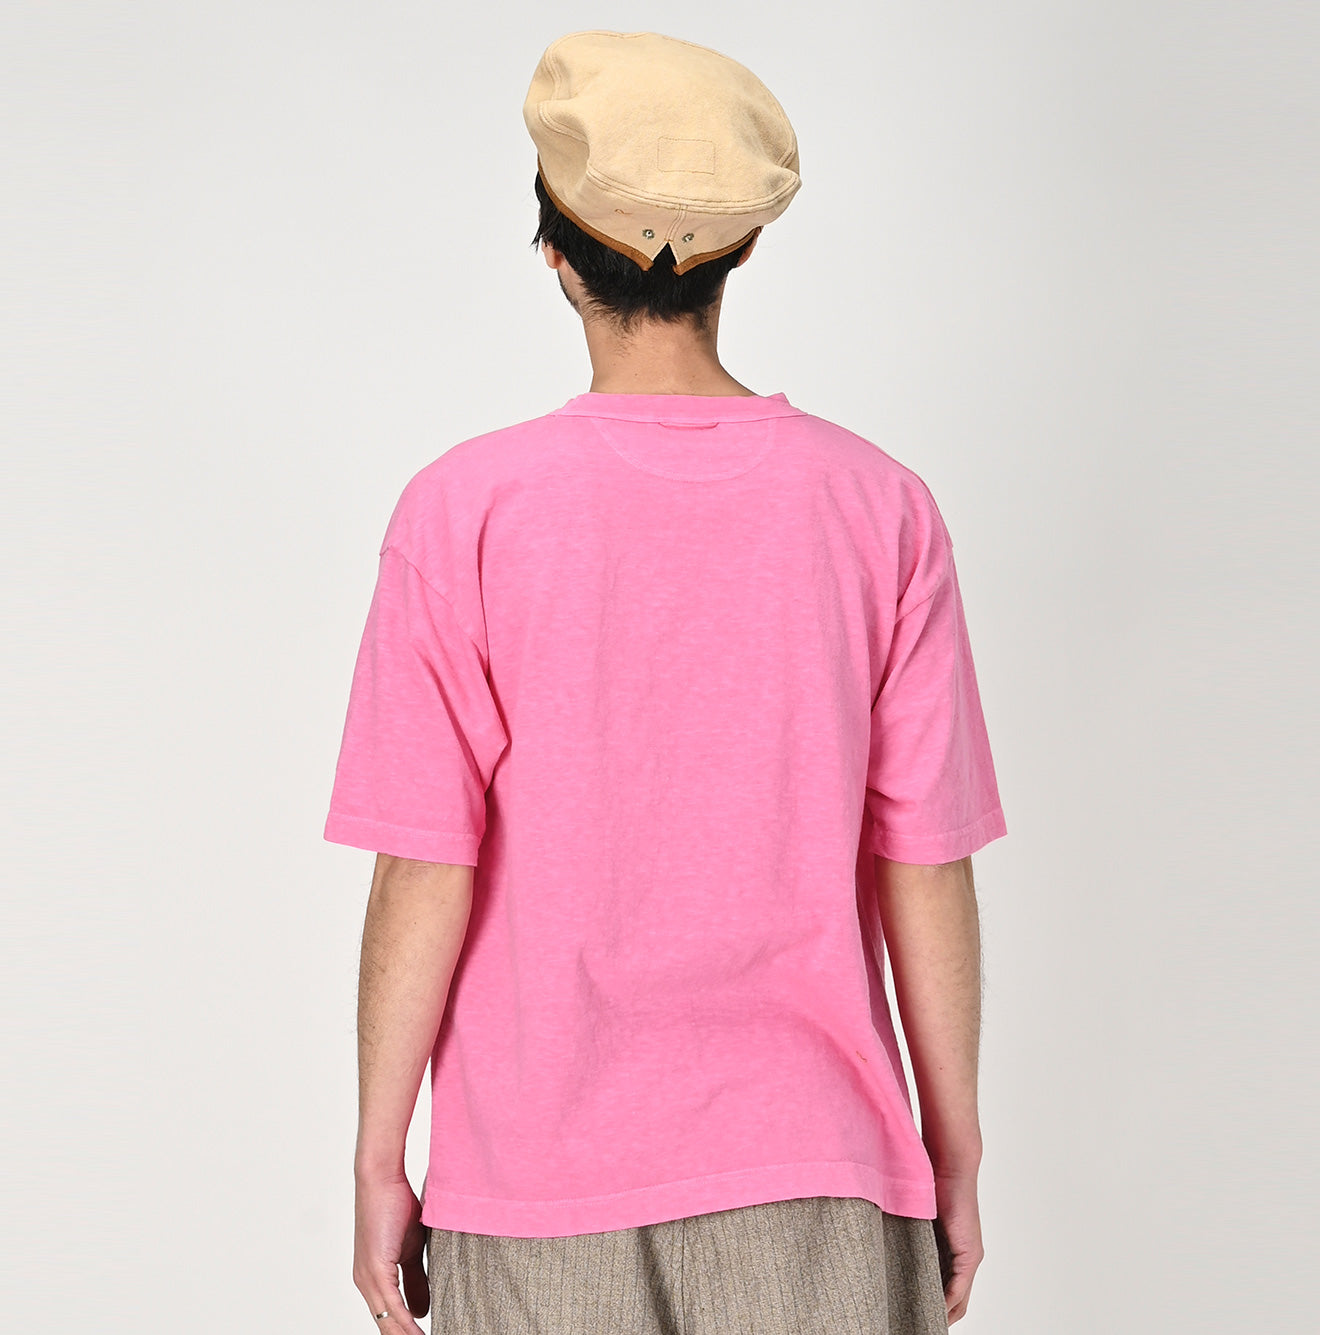 Sakura Dyed 45 Star 908 T-shirt – 45R Global